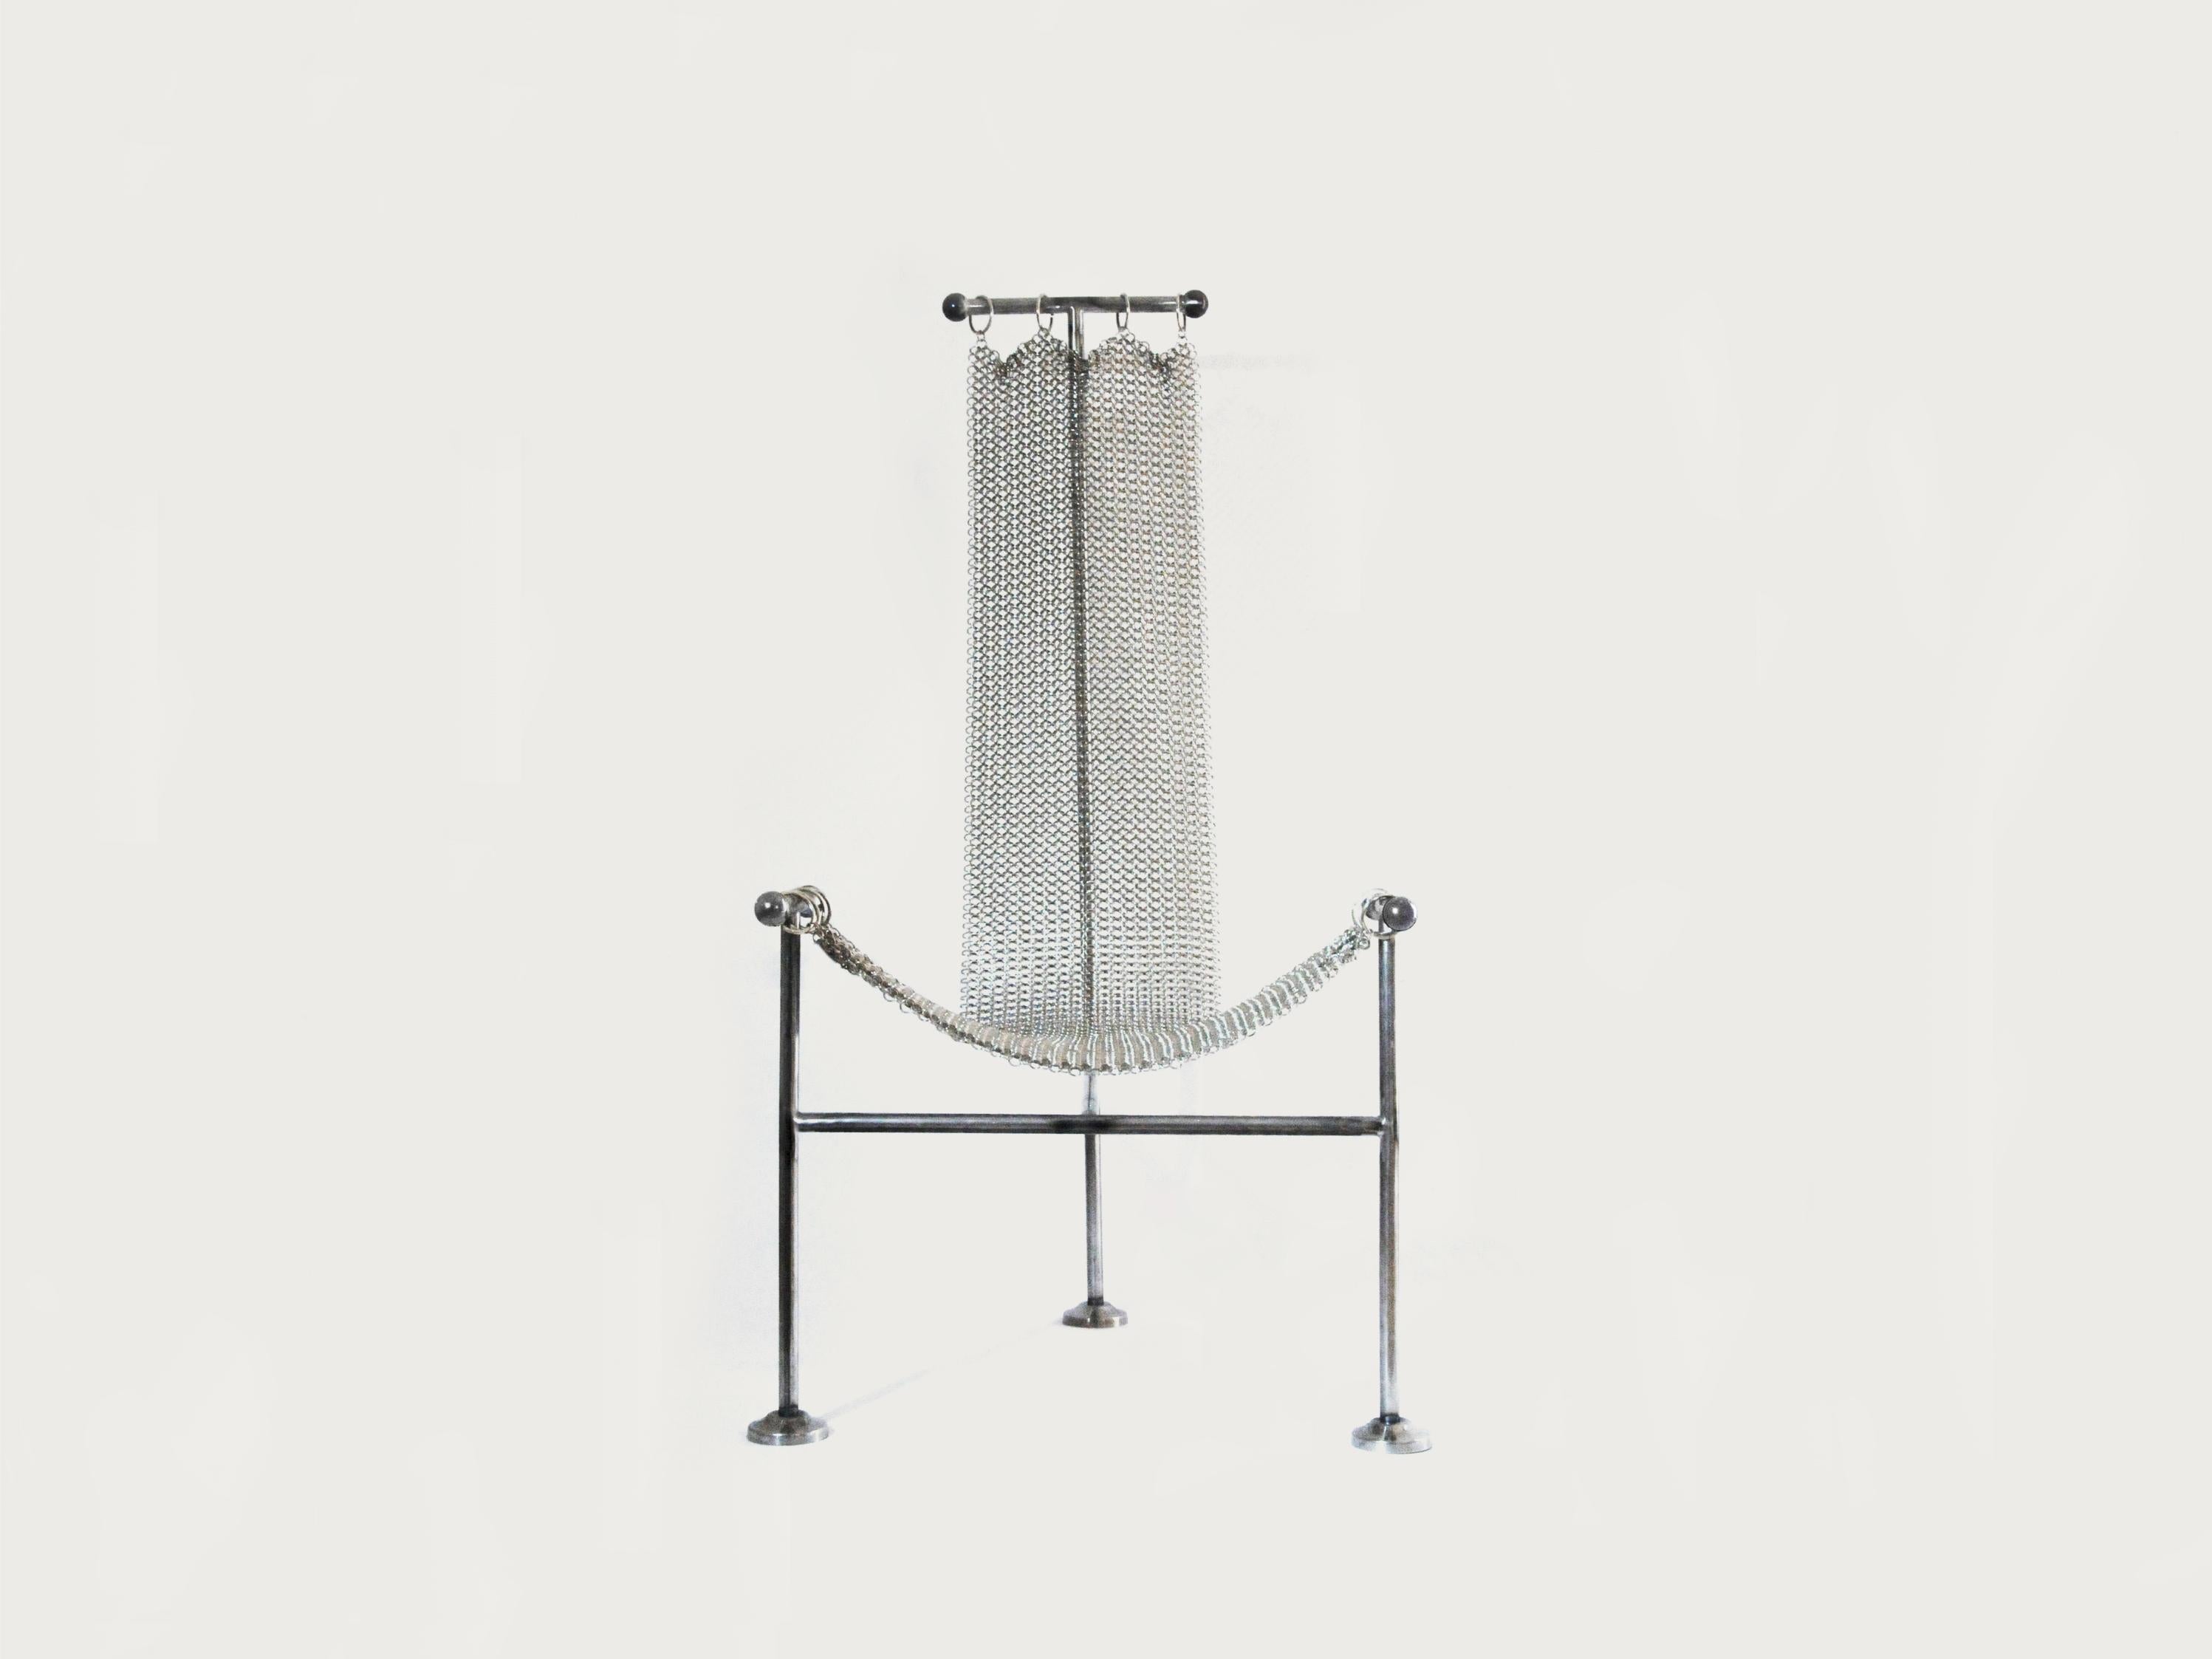 Kettenhemdstuhl von Panorammma
MATERIAL: Stahl, Vernickelung
Abmessungen: 120 x 60 x 60 cm

Panorammma ist ein Möbeldesign-Atelier mit Sitz in Mexiko-Stadt, das durch das Experimentieren mit MATERIALEN und Formen unser Verhältnis zu funktionalen